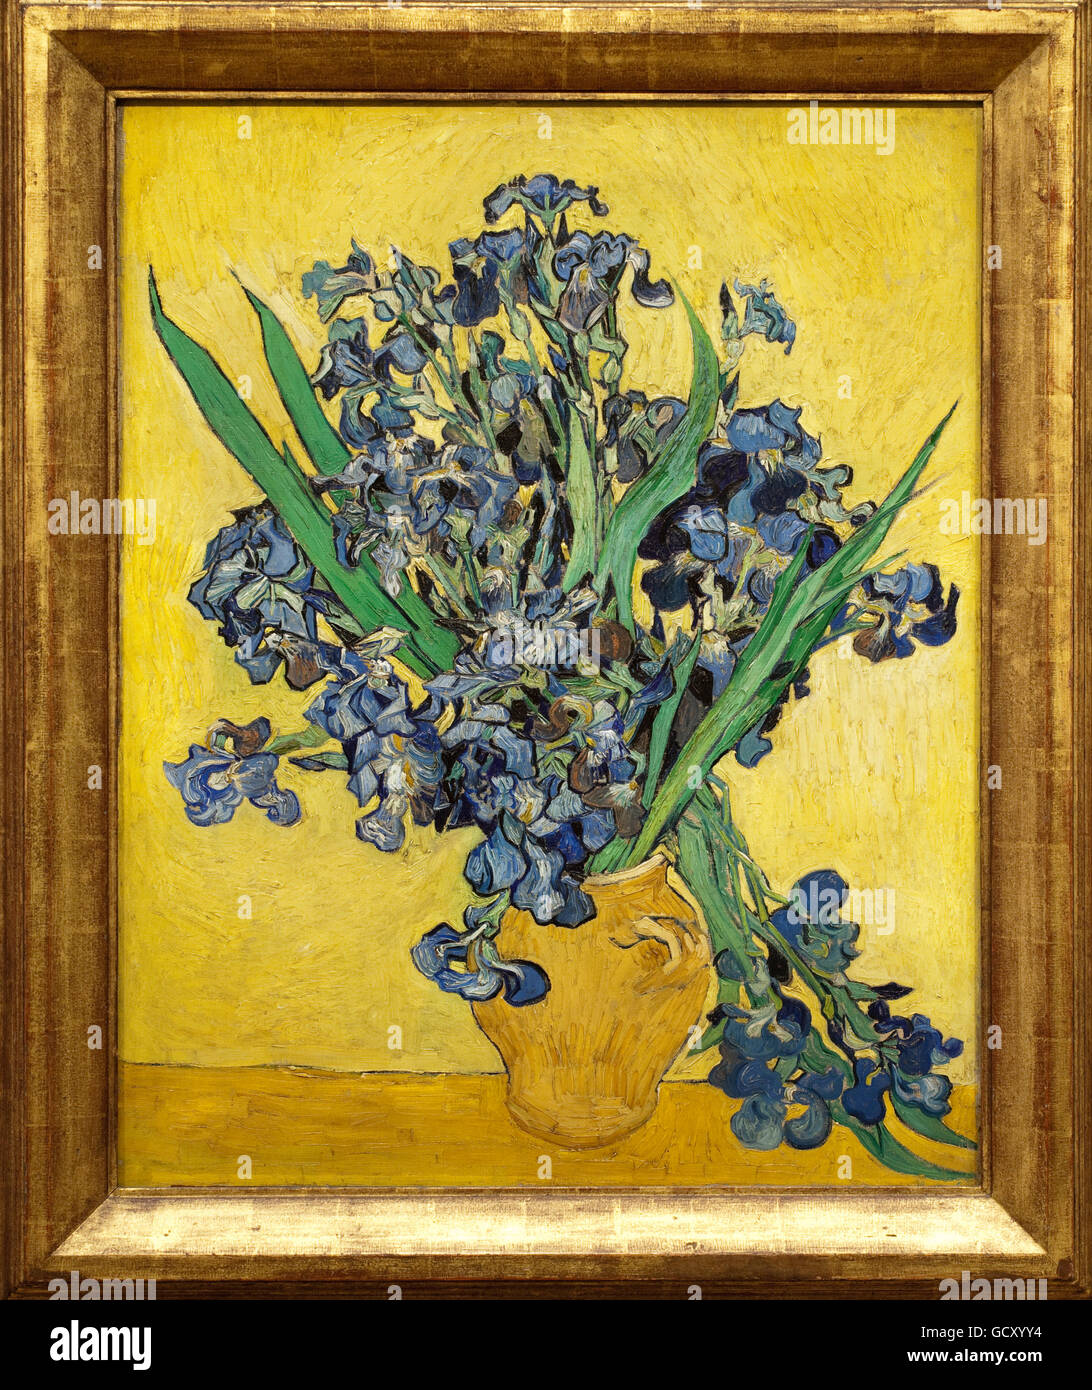 Vincent van Gogh, Irisses, Nature morte avec Iris, 1890, Musée Van Gogh, Amsterdam, Hollande, Pays-Bas, Europe Banque D'Images